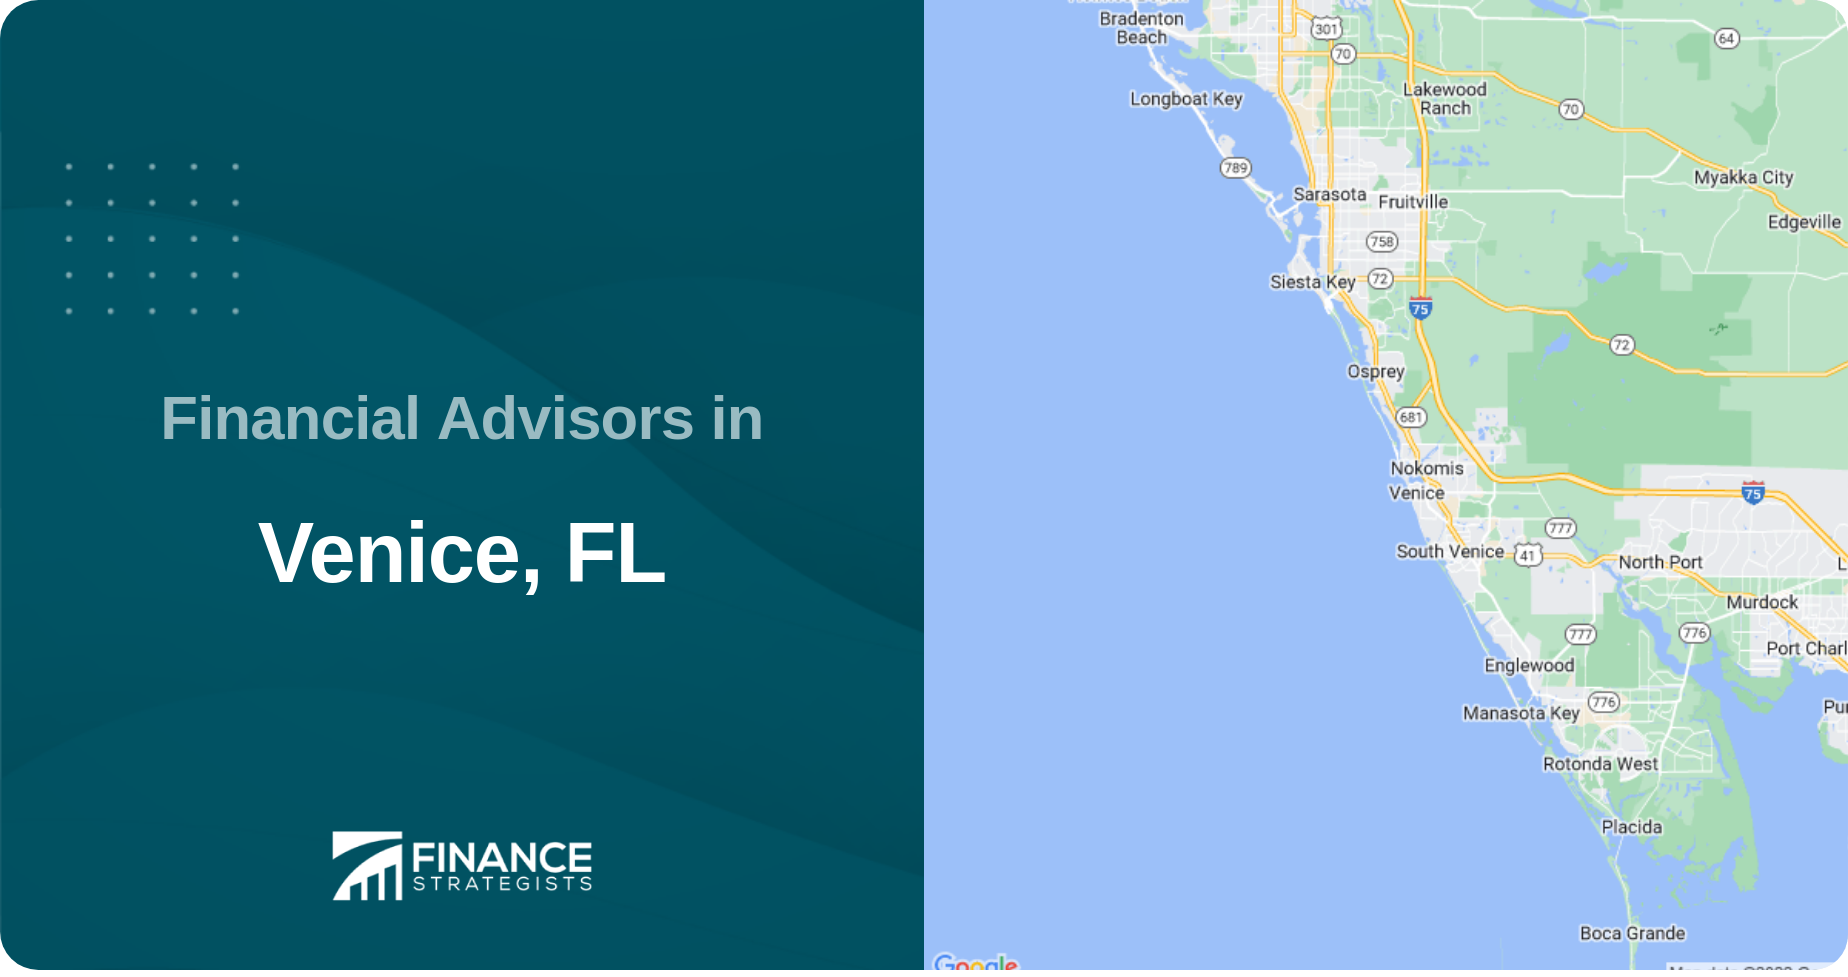 Financial Advisors in Venice, FL